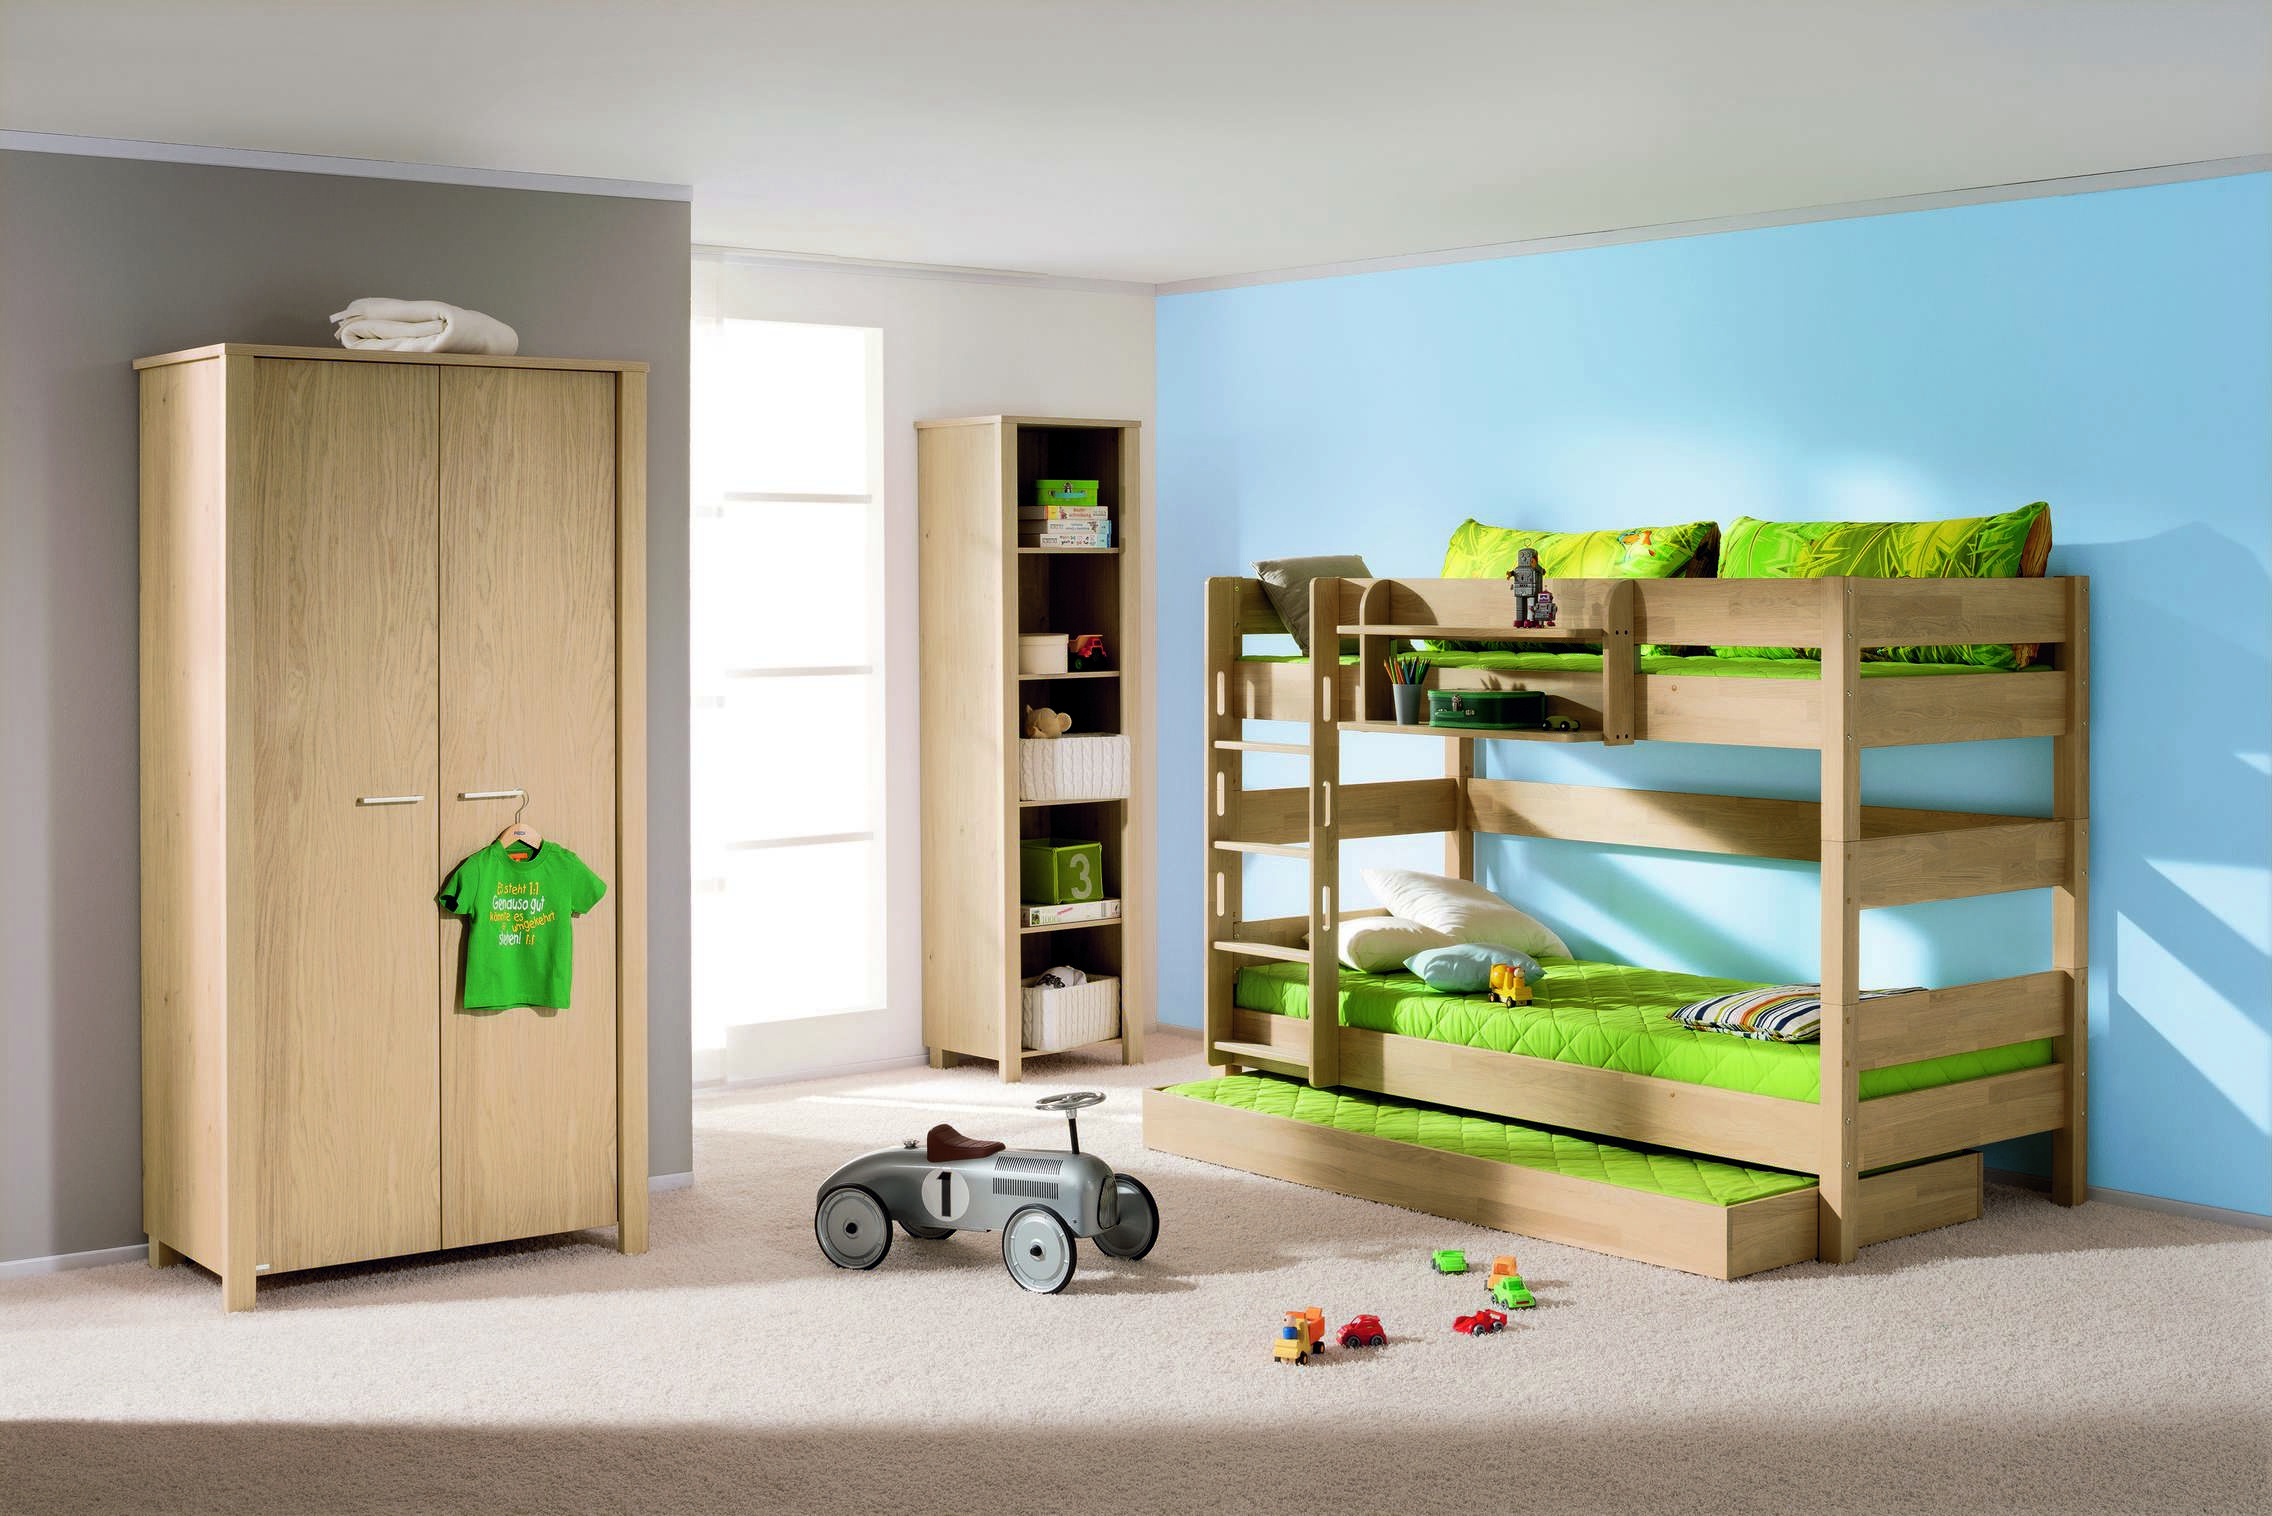 Экологичный и безопасный ремонт детской комнаты для защиты здоровья ребёнка